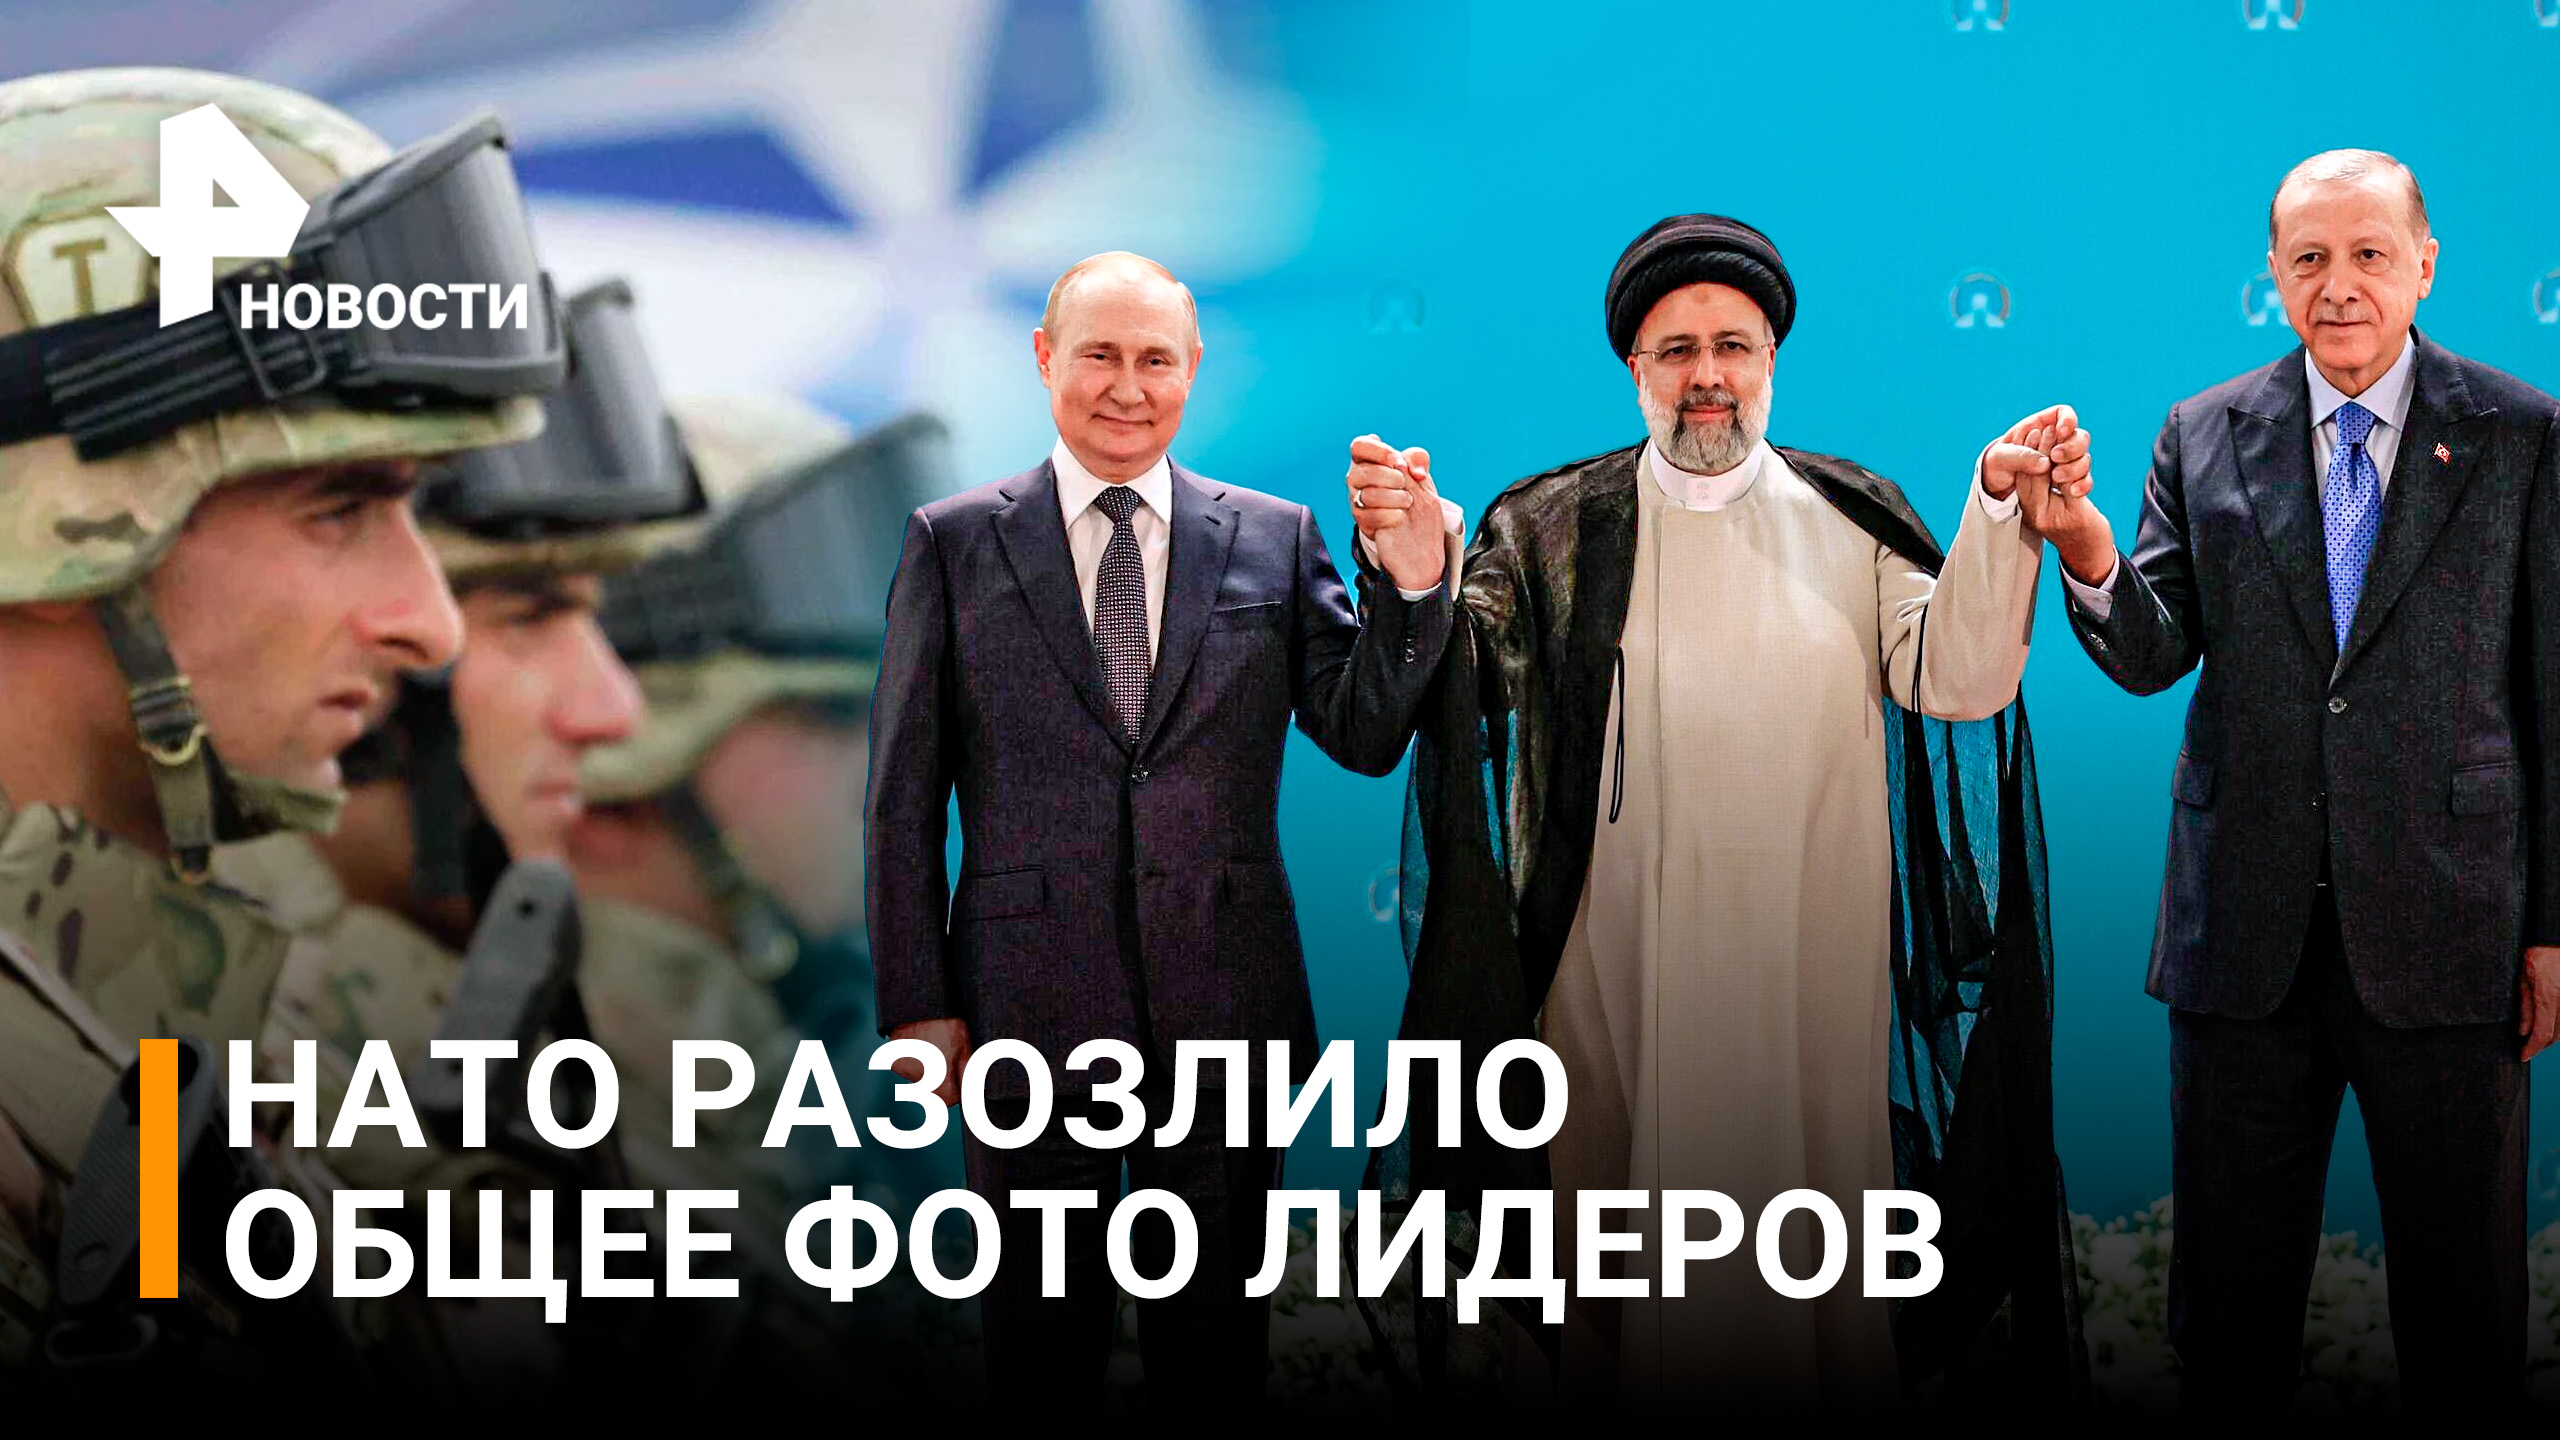 "Фото Путина с Эрдоганом - вызов для НАТО": глава МИД Германии Бербок / РЕН Новости